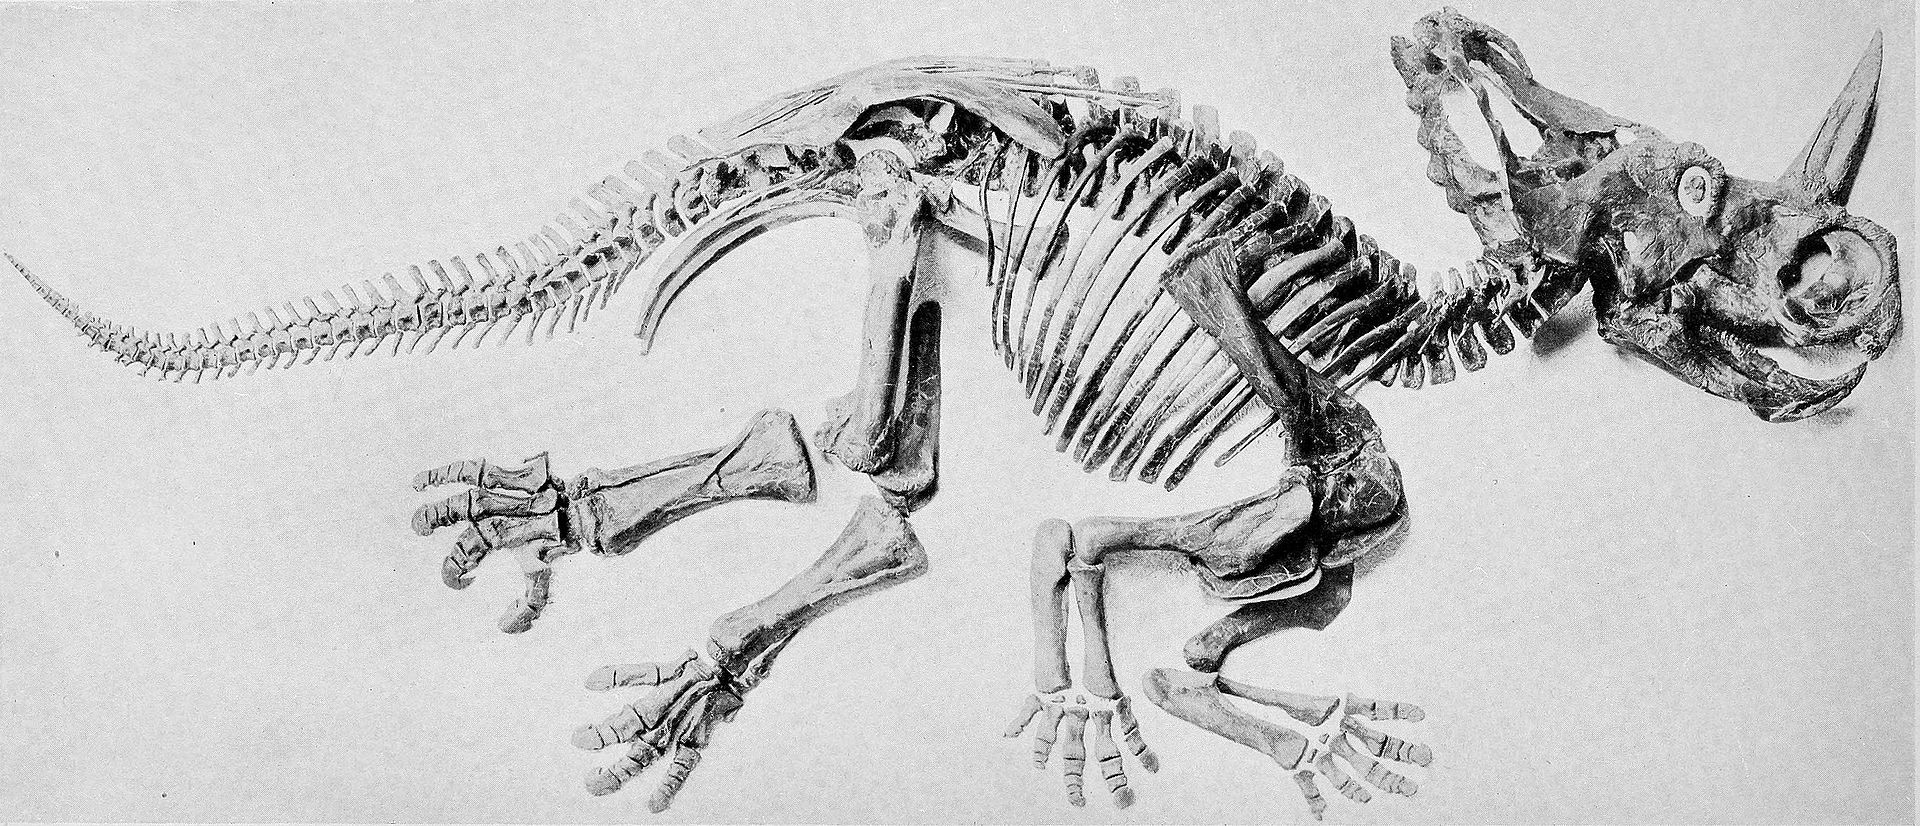 Fosilní kostra centrosaura, popsaná původně jako „Monoclonius nasicornus„. Centrosauři byli středně velcí ceratopsidi, dosahující délky v rozmezí 5 až 6 metrů a hmotnosti zhruba do 2,5 tuny. Žili v době před 76,5 až 75,5 miliony let a byli velmi poče